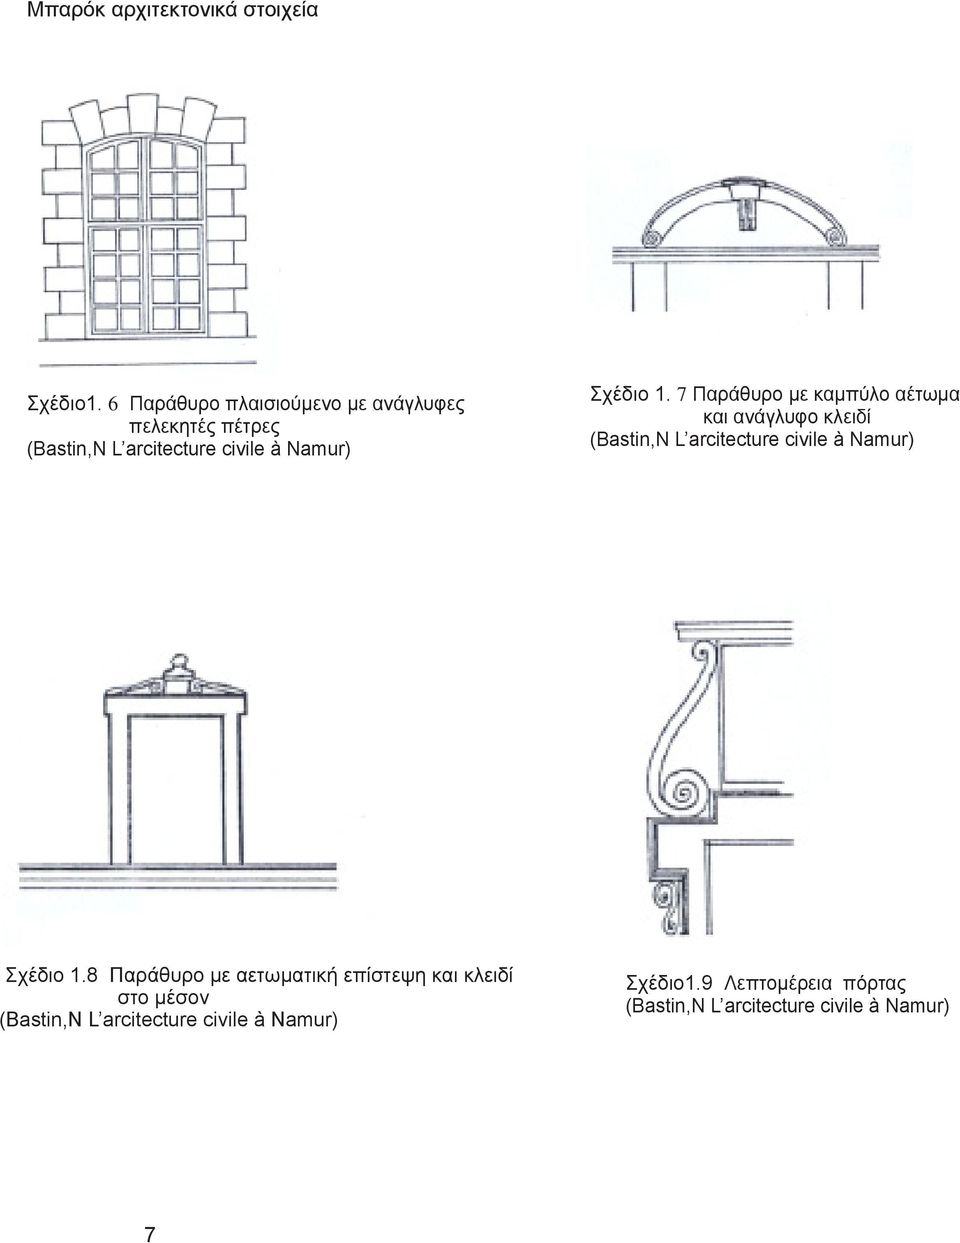 1. 7 Παράθυρο με καμπύλο αέτωμα και ανάγλυφο κλειδί (Bastin,N L arcitecture civile à Namur) Σχέδιο 1.